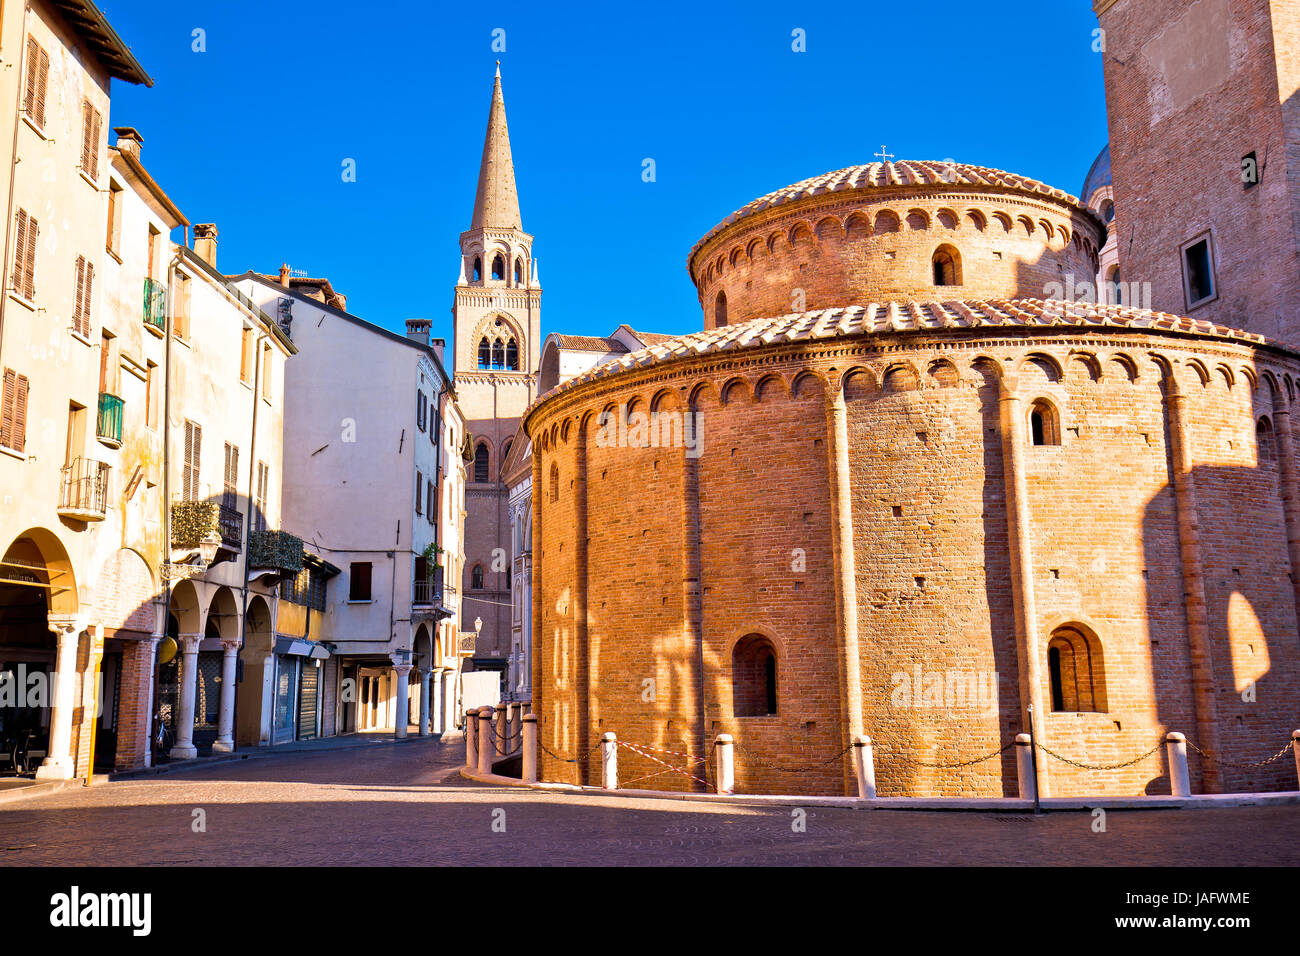 La ville de Mantoue Piazza delle Erbe vue, capitale européenne de la culture et de l'UNESCO World Heritage site, région Lombardie Italie Banque D'Images